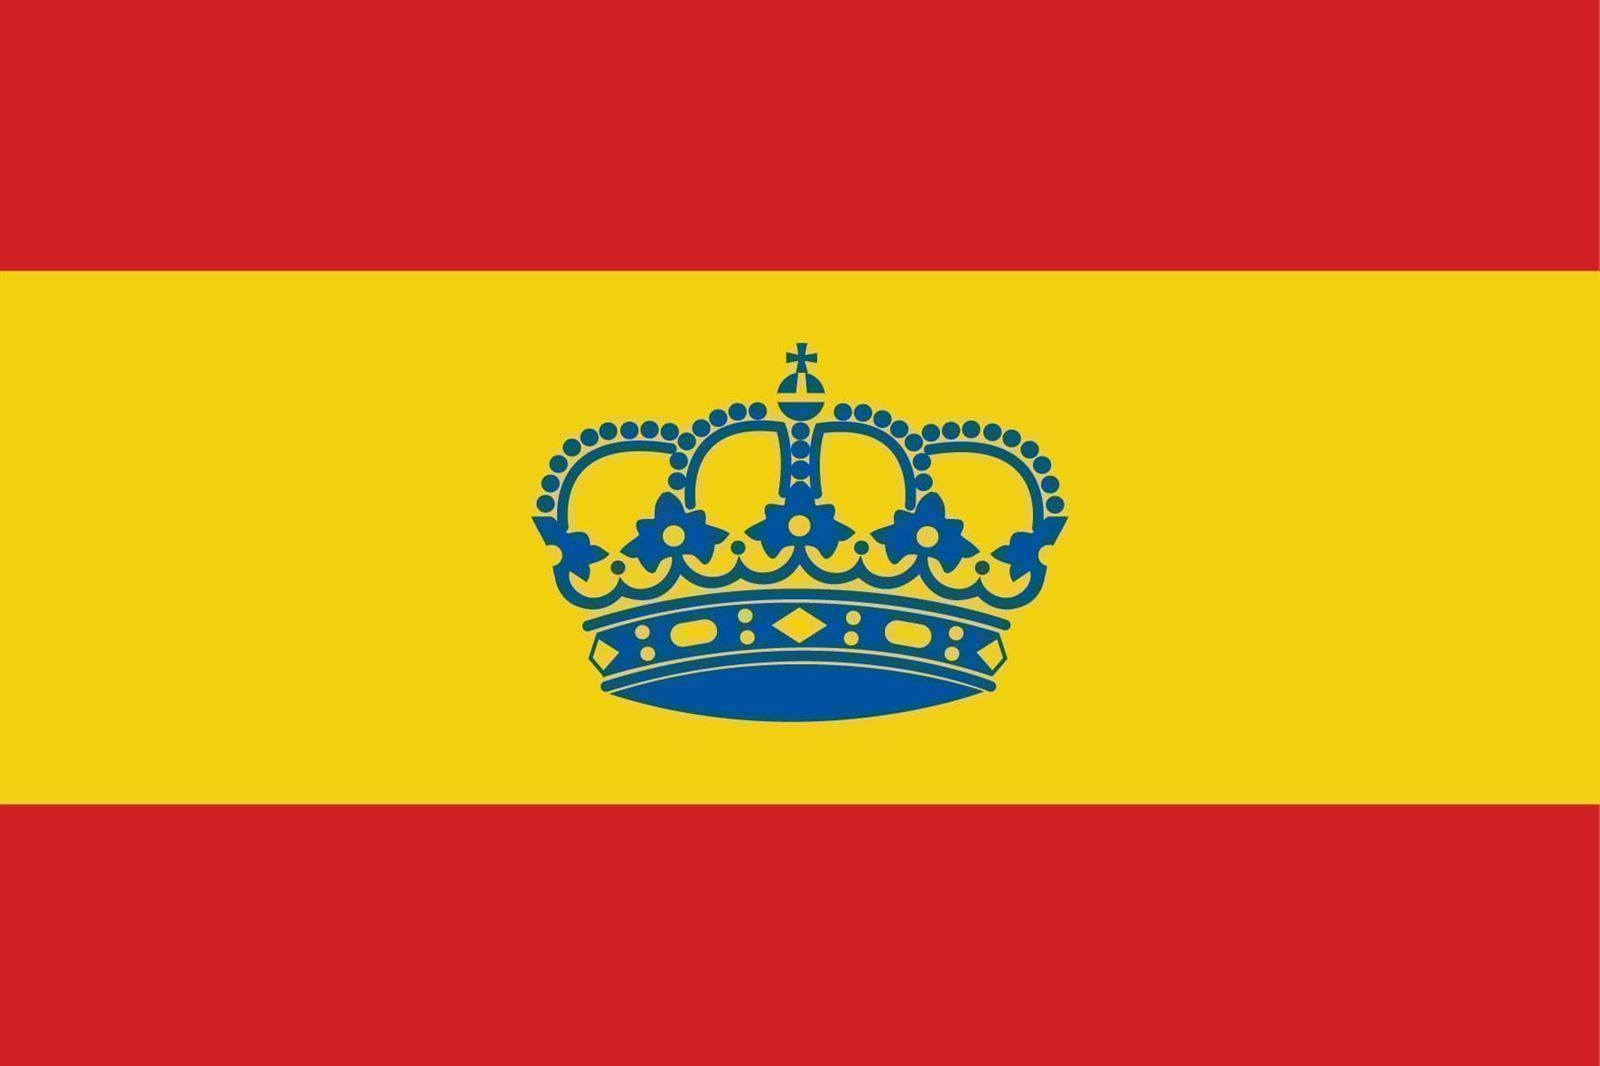 Bandera de España náutica deportiva para embarcaciones de recreo